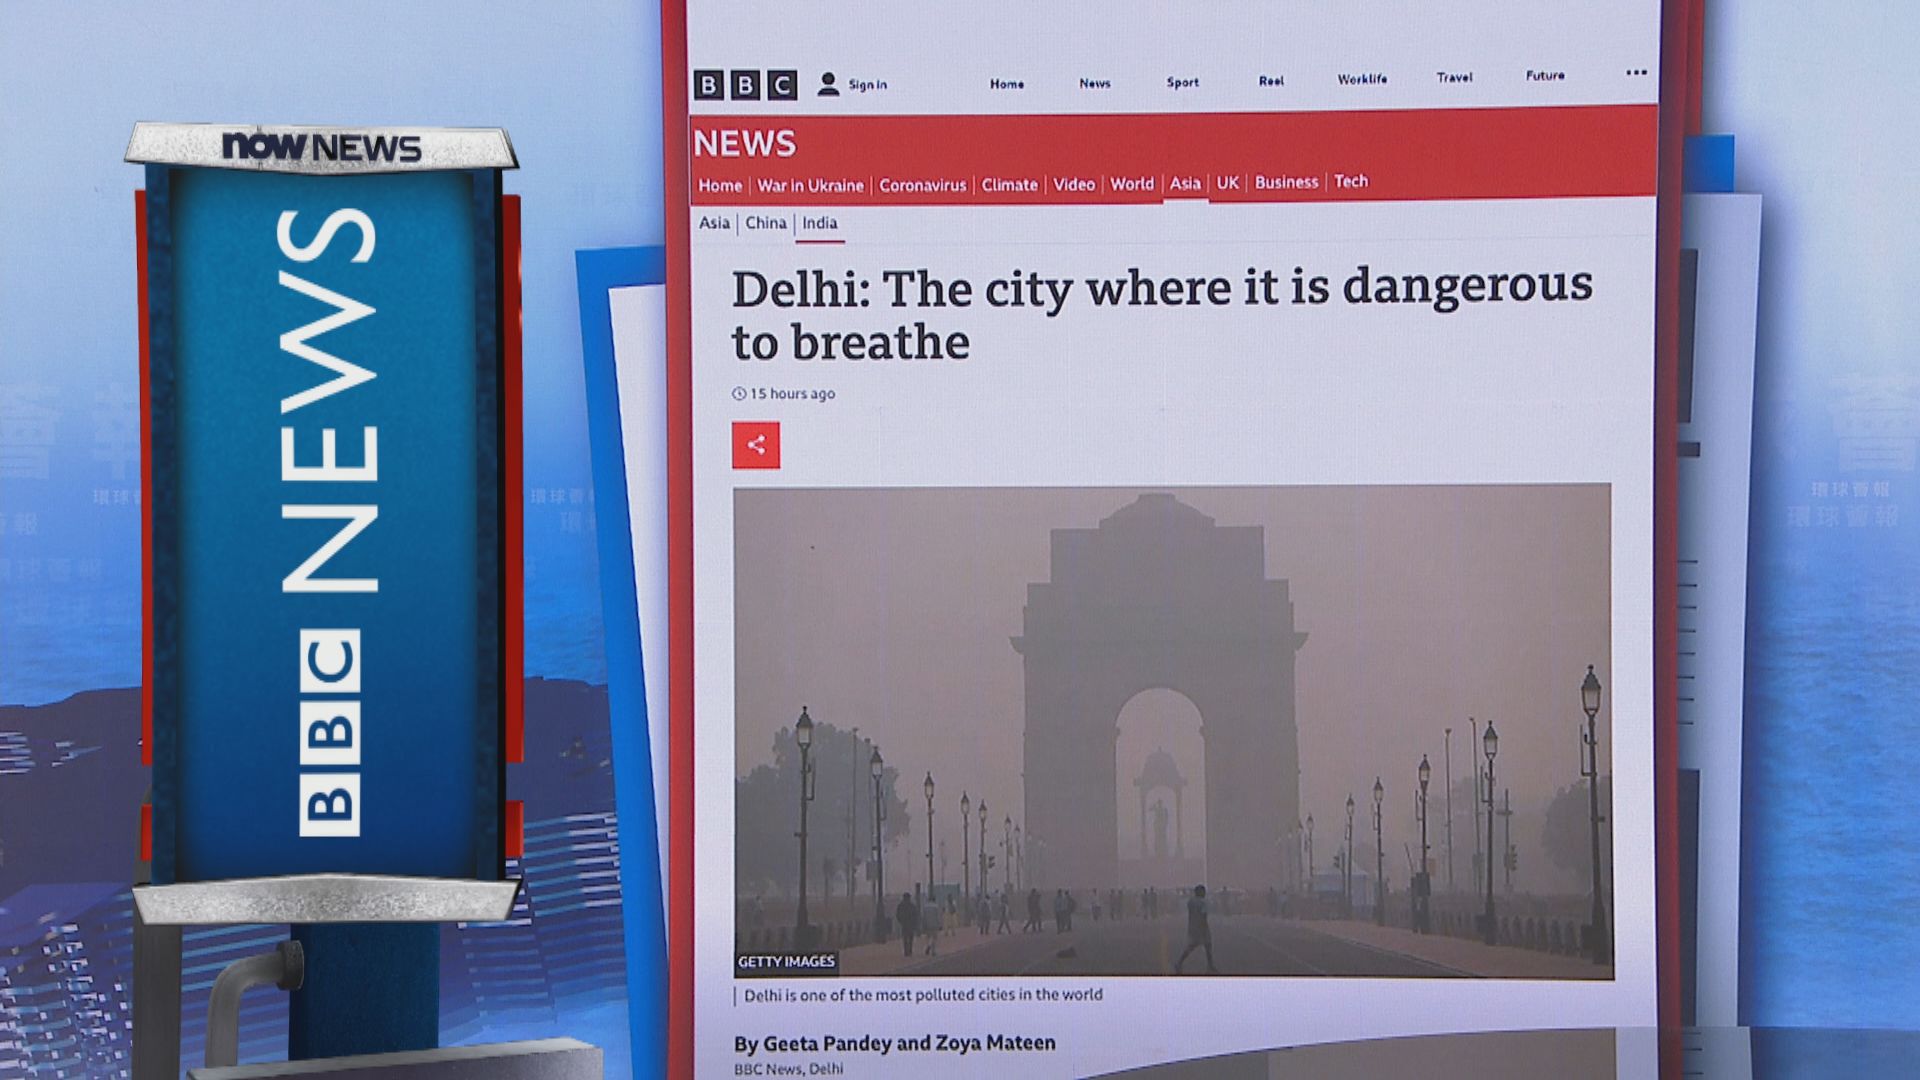 【環球薈報】印度新德里空氣污染嚴重已達至危險程度